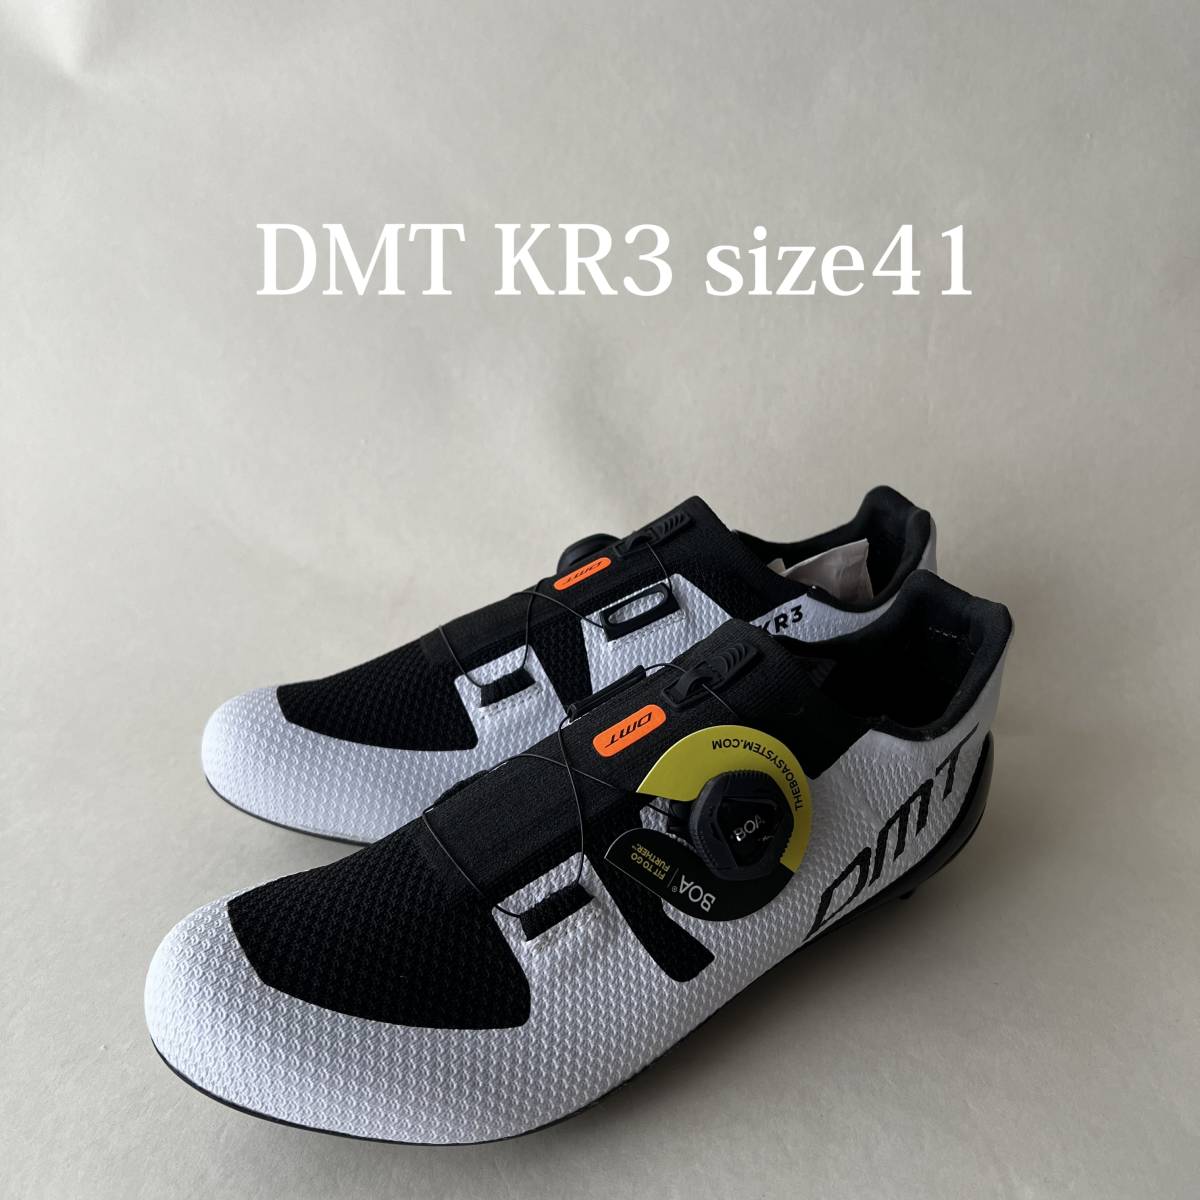 [ новый товар ] DMT KR3 шоссейный велосипед обувь белый / черный размер 41(26.38cm) бесплатная доставка 